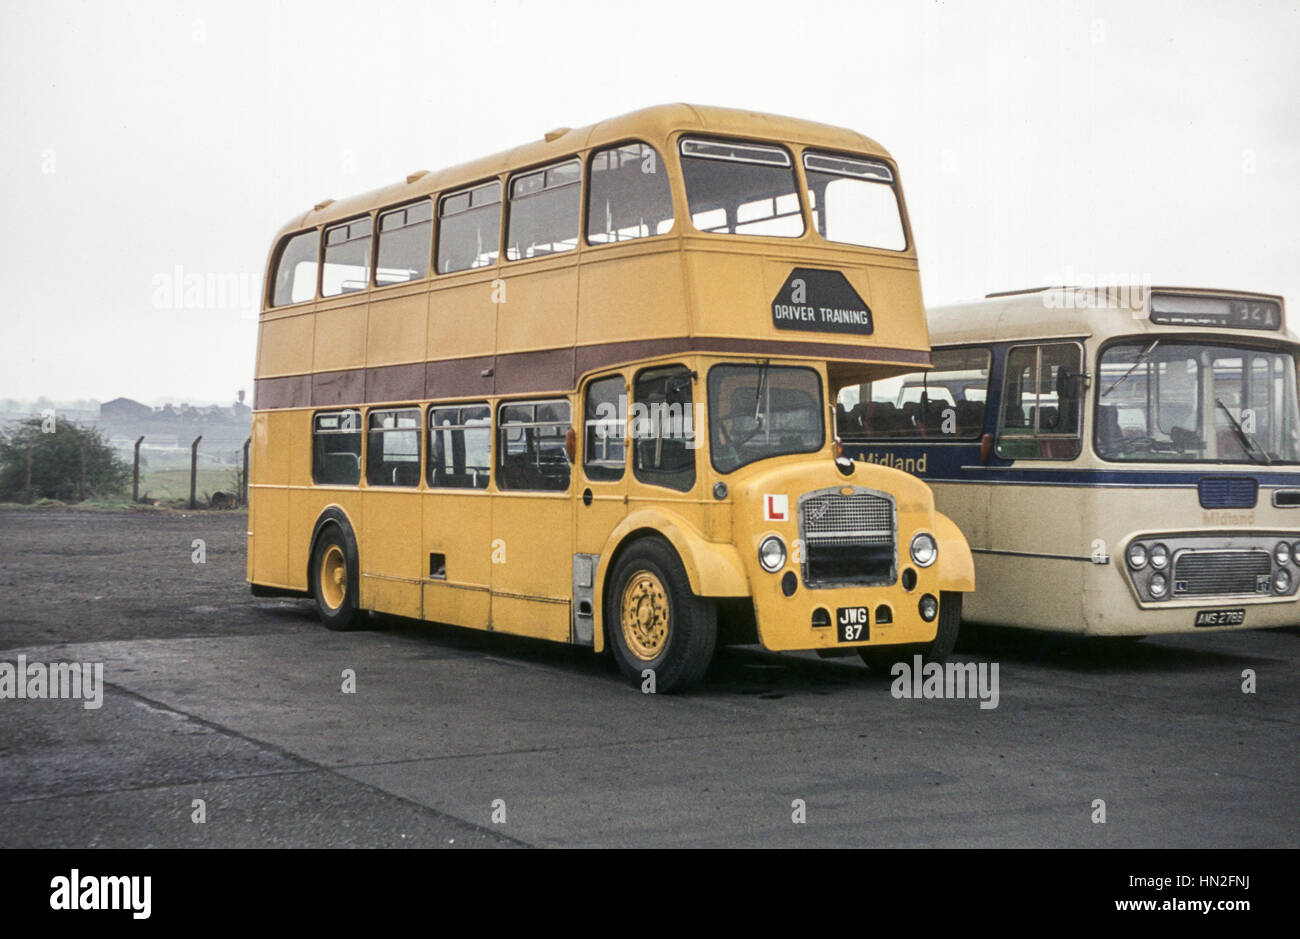 Edimburgo, Reino Unido - 1973: Vintage imagen de autobuses en Edimburgo. Alexander Midland MPE bus 12(registro AMS 278B) junto a Alexander Midland Rd32 (registro GMT 87) que se utiliza para la formación de los conductores. Foto de stock